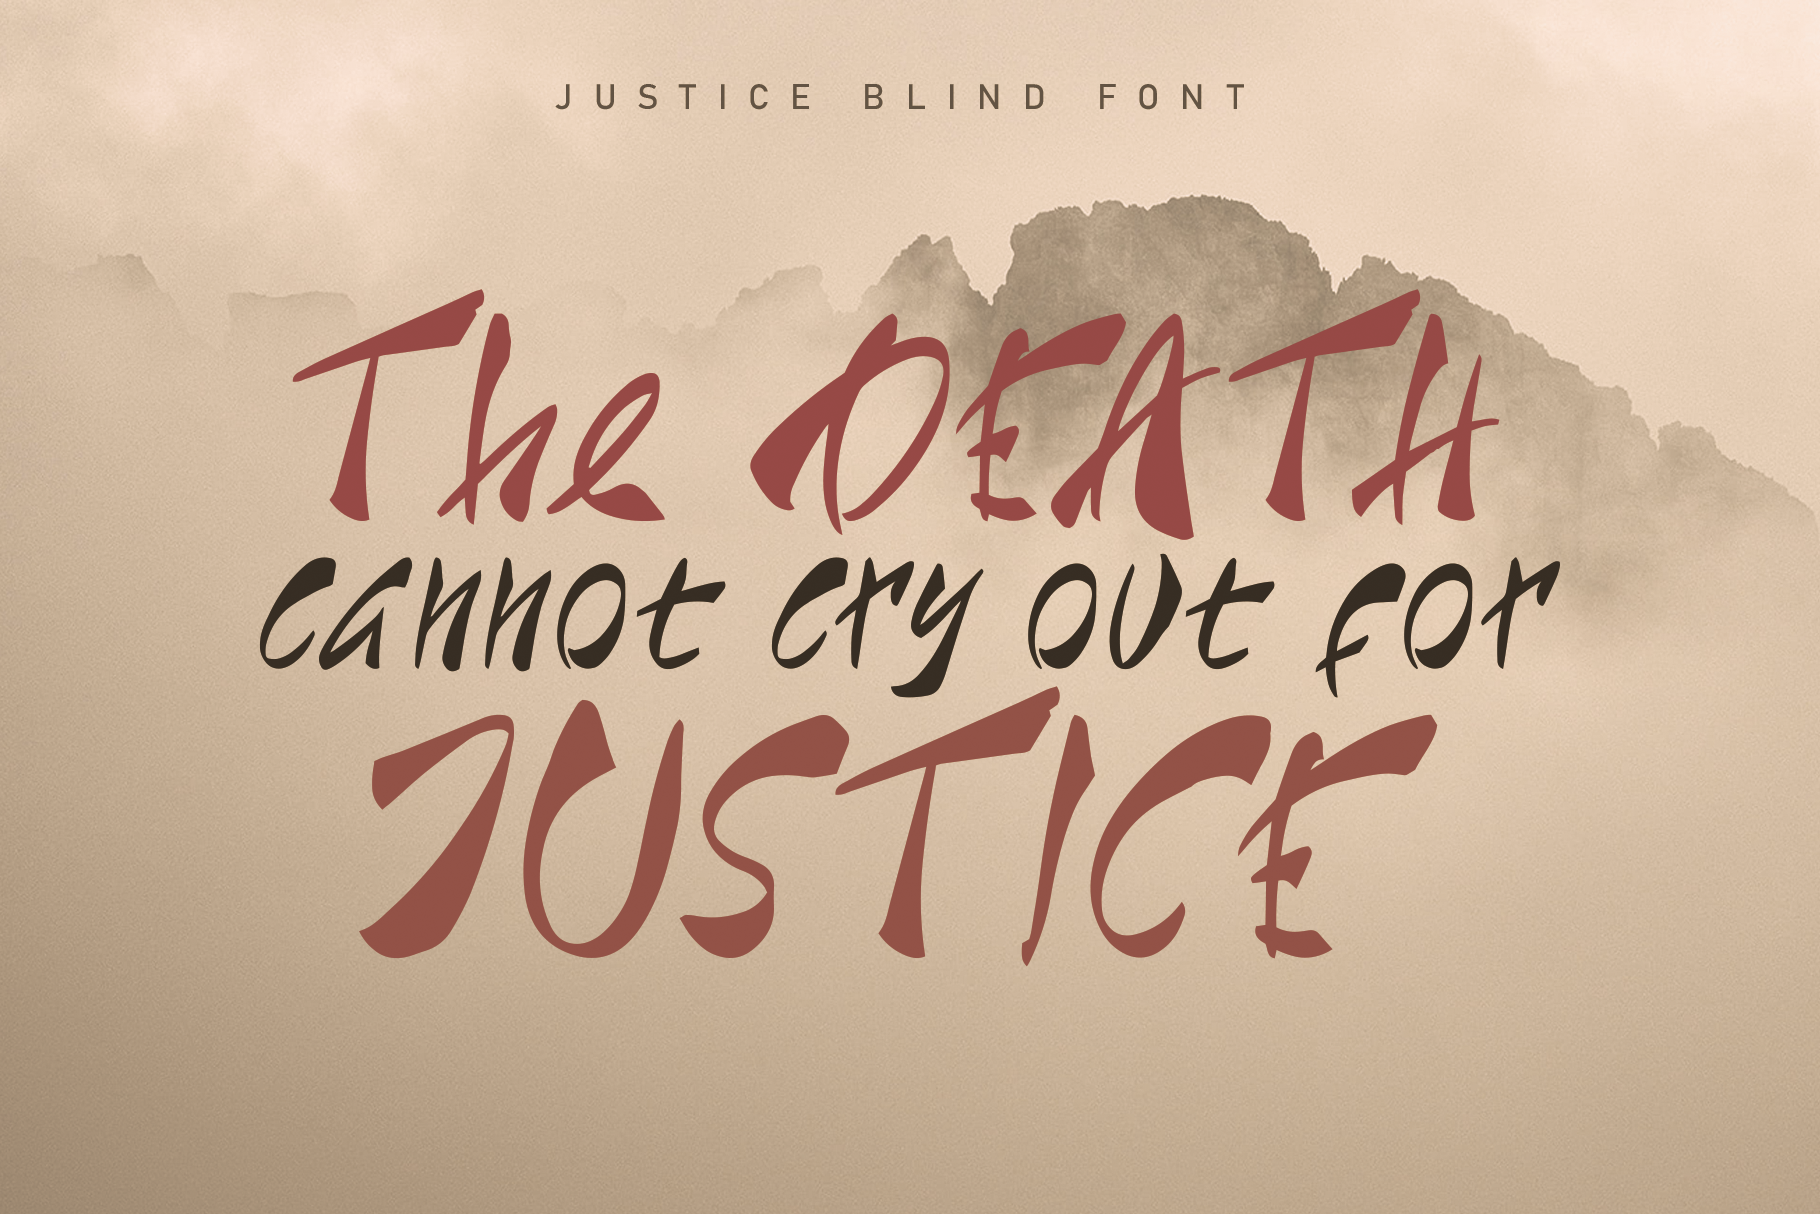 Justice Blind